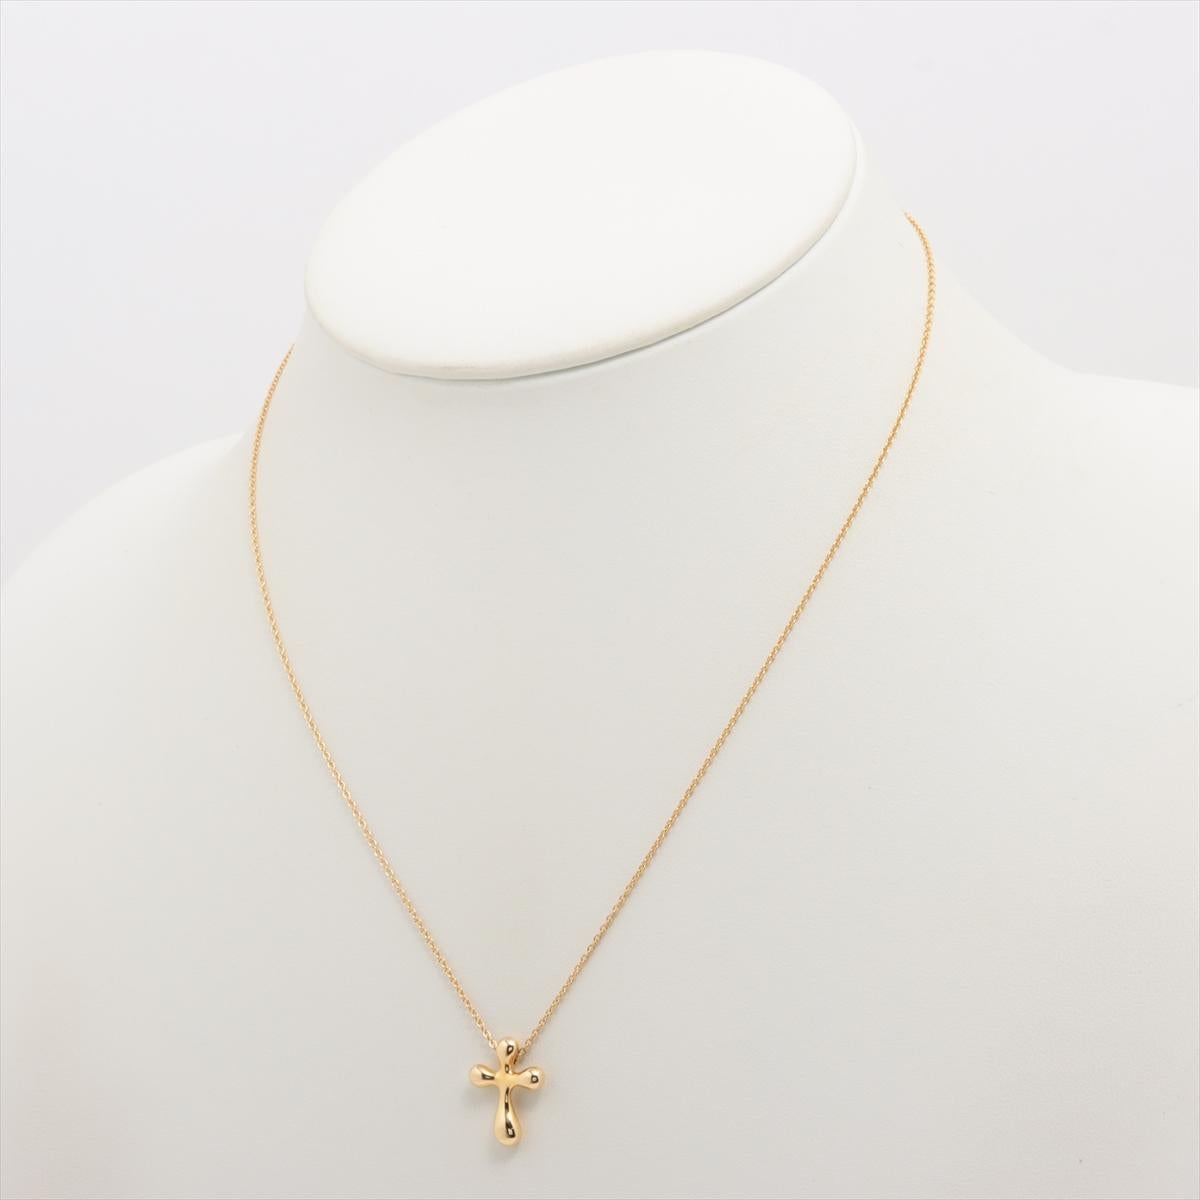 Marke : Tiffany 
Beschreibung: Tiffany Small Cross Halskette 
Metall Typ: 750YG/Gelbgold
Gewicht 3,8 g
Zustand: Gebraucht; leichte Gebrauchsspuren
Box -  Nicht inbegriffen
Papiere -  Nicht inbegriffen
